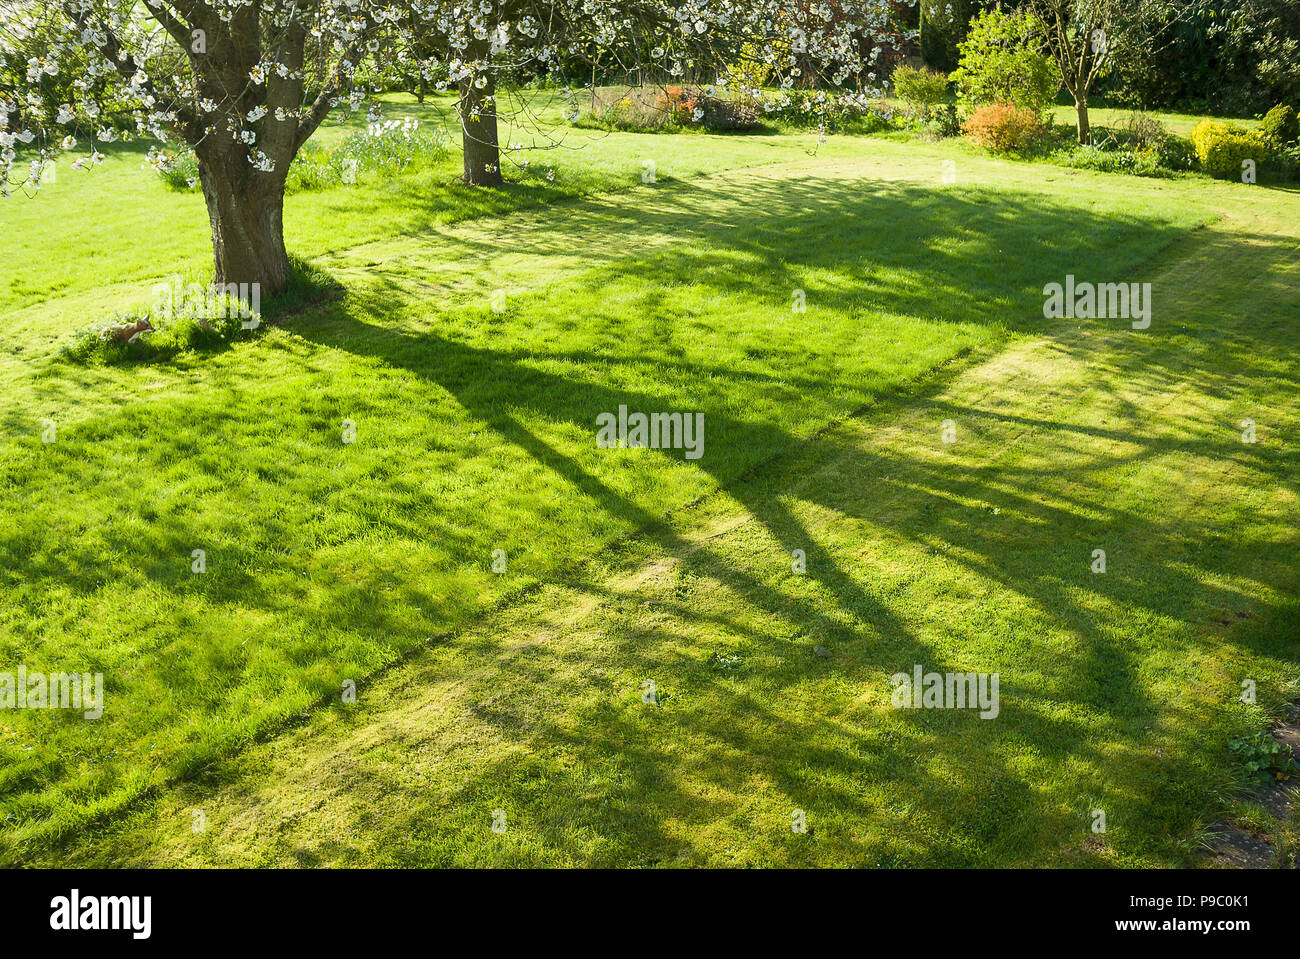 Les ombres jouant sur une pelouse à l'herbe coupée au début du printemps. Premier blossom sur prunus avium arbre dans un jardin anglais Banque D'Images